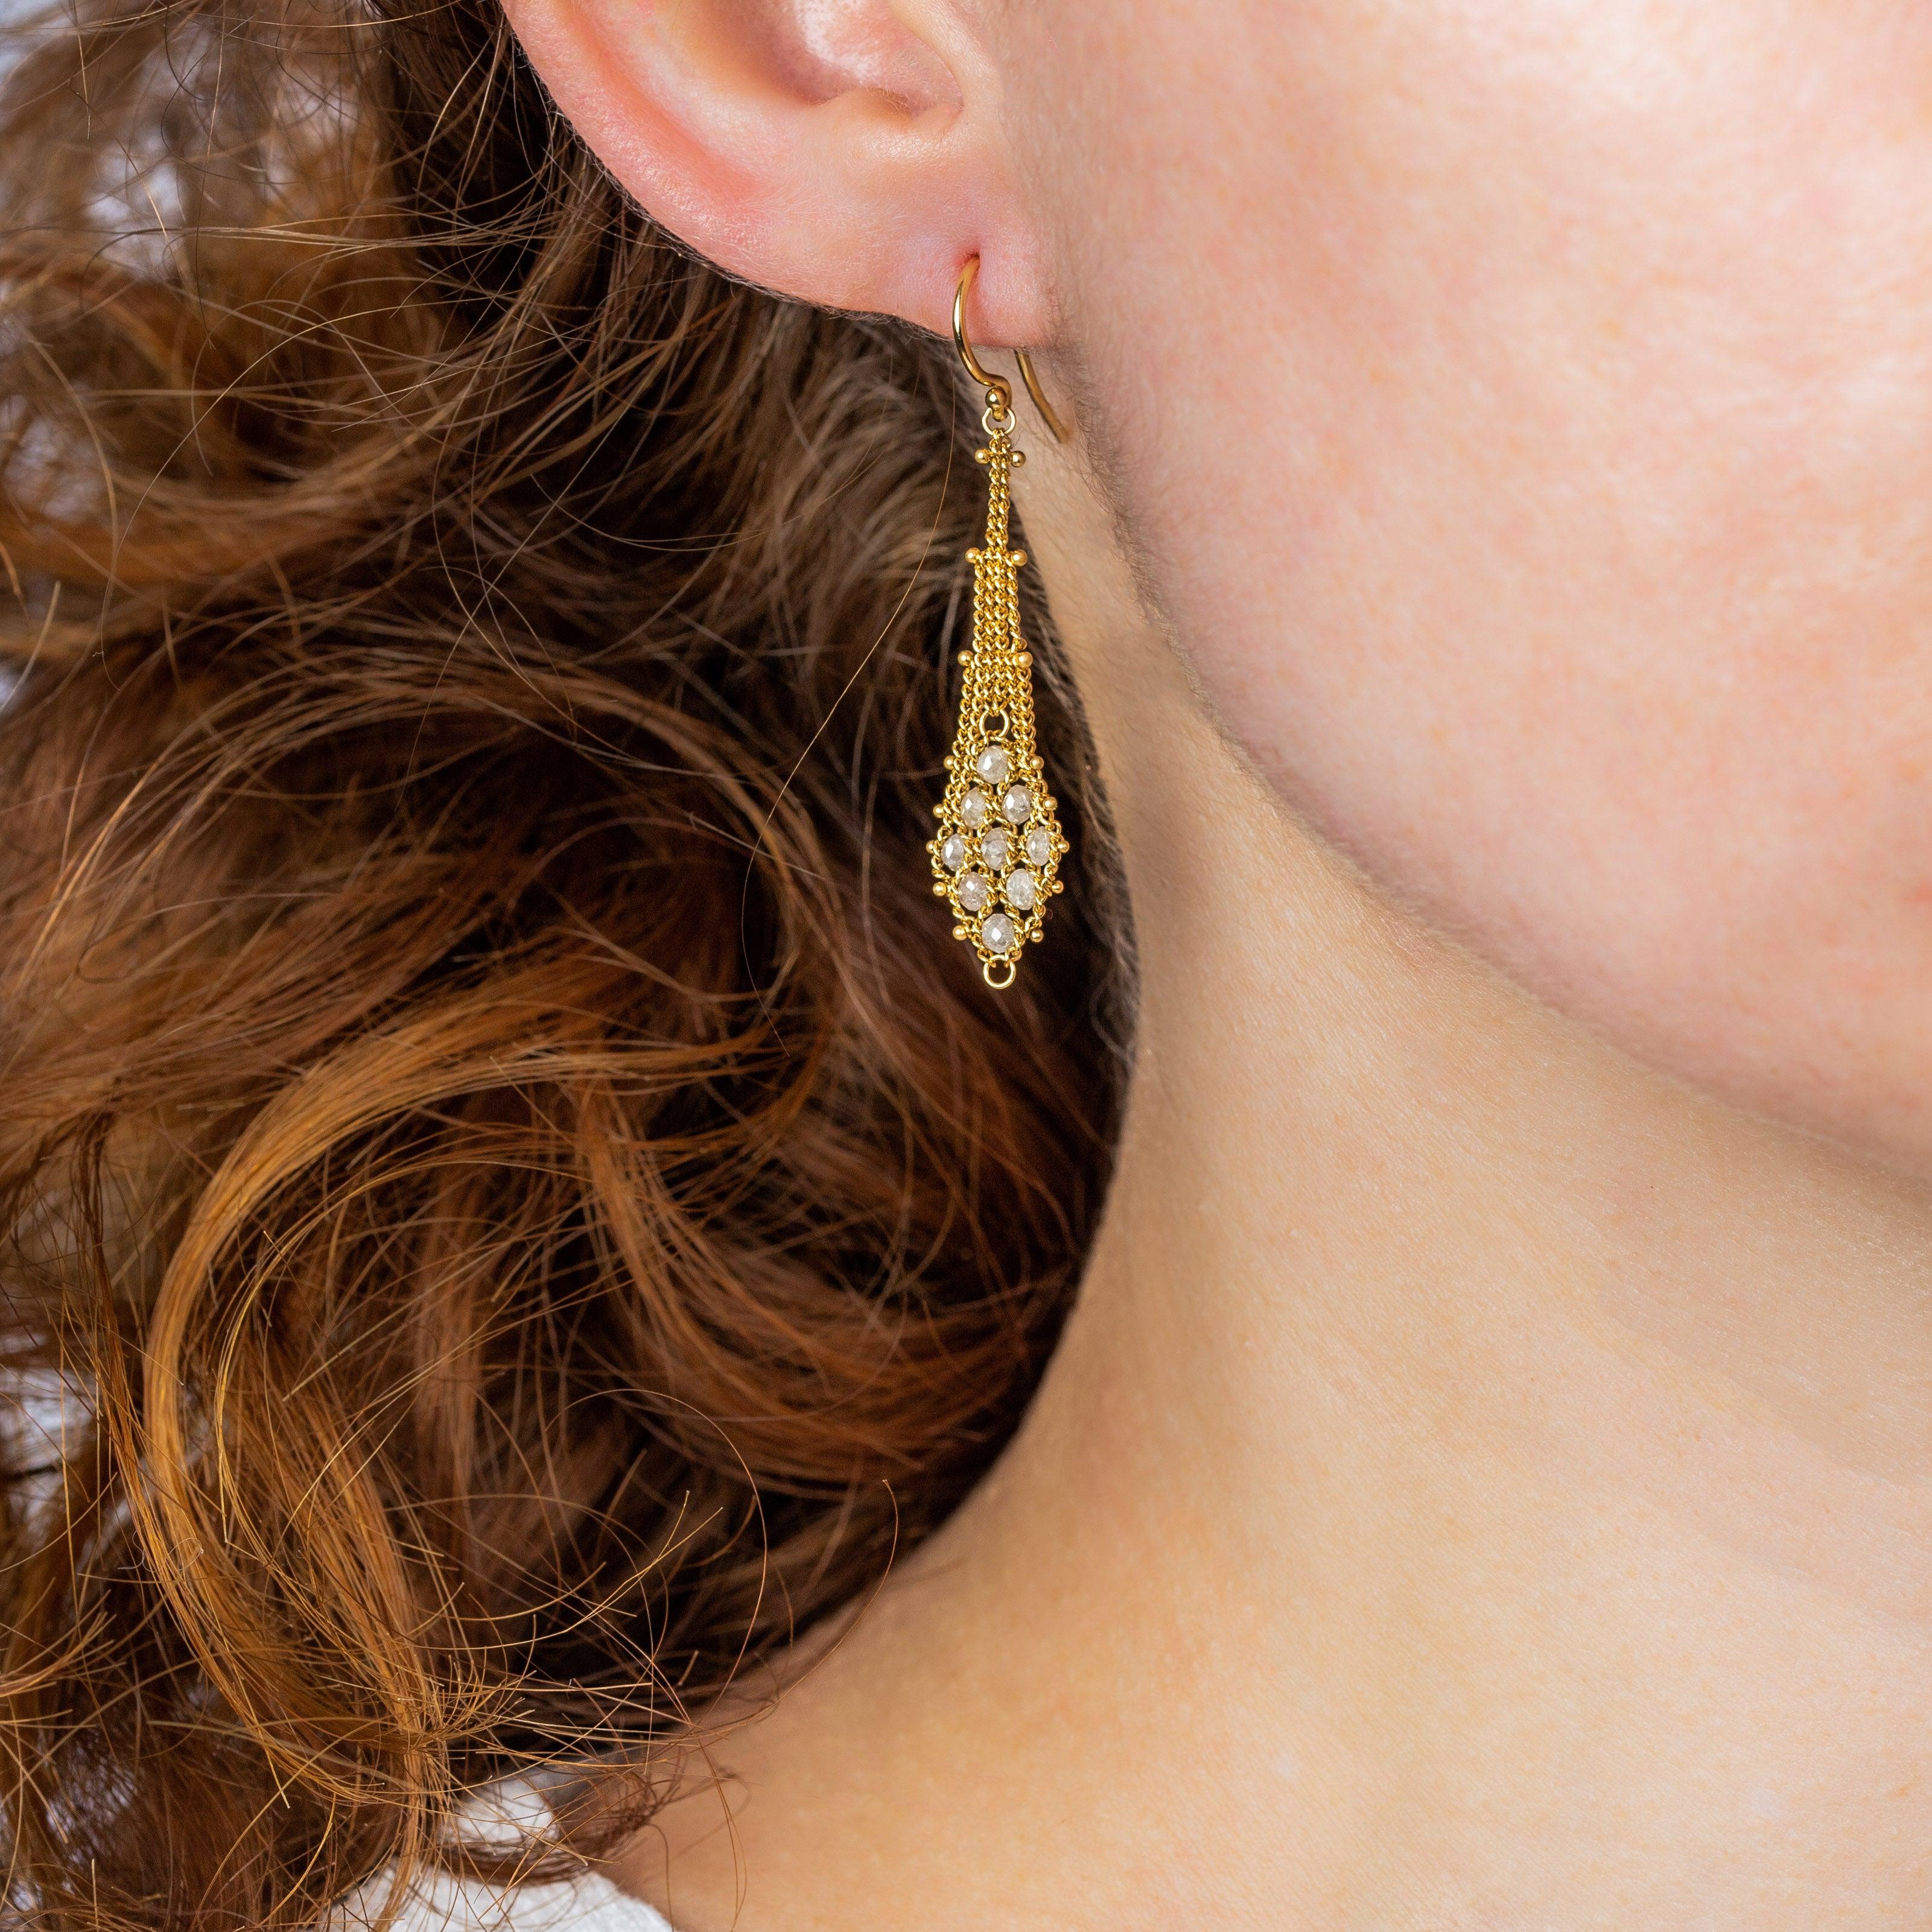 Diese Ohrringe beginnen mit einem hängenden Spalier aus sorgfältig handgeflochtenen Ketten aus 18 Karat Gelbgold. Das butterweiche Geflecht aus üppigen Goldsträngen weitet sich zu einer goldenen Drachenform, die durchgehend mit ätherischen Perlen